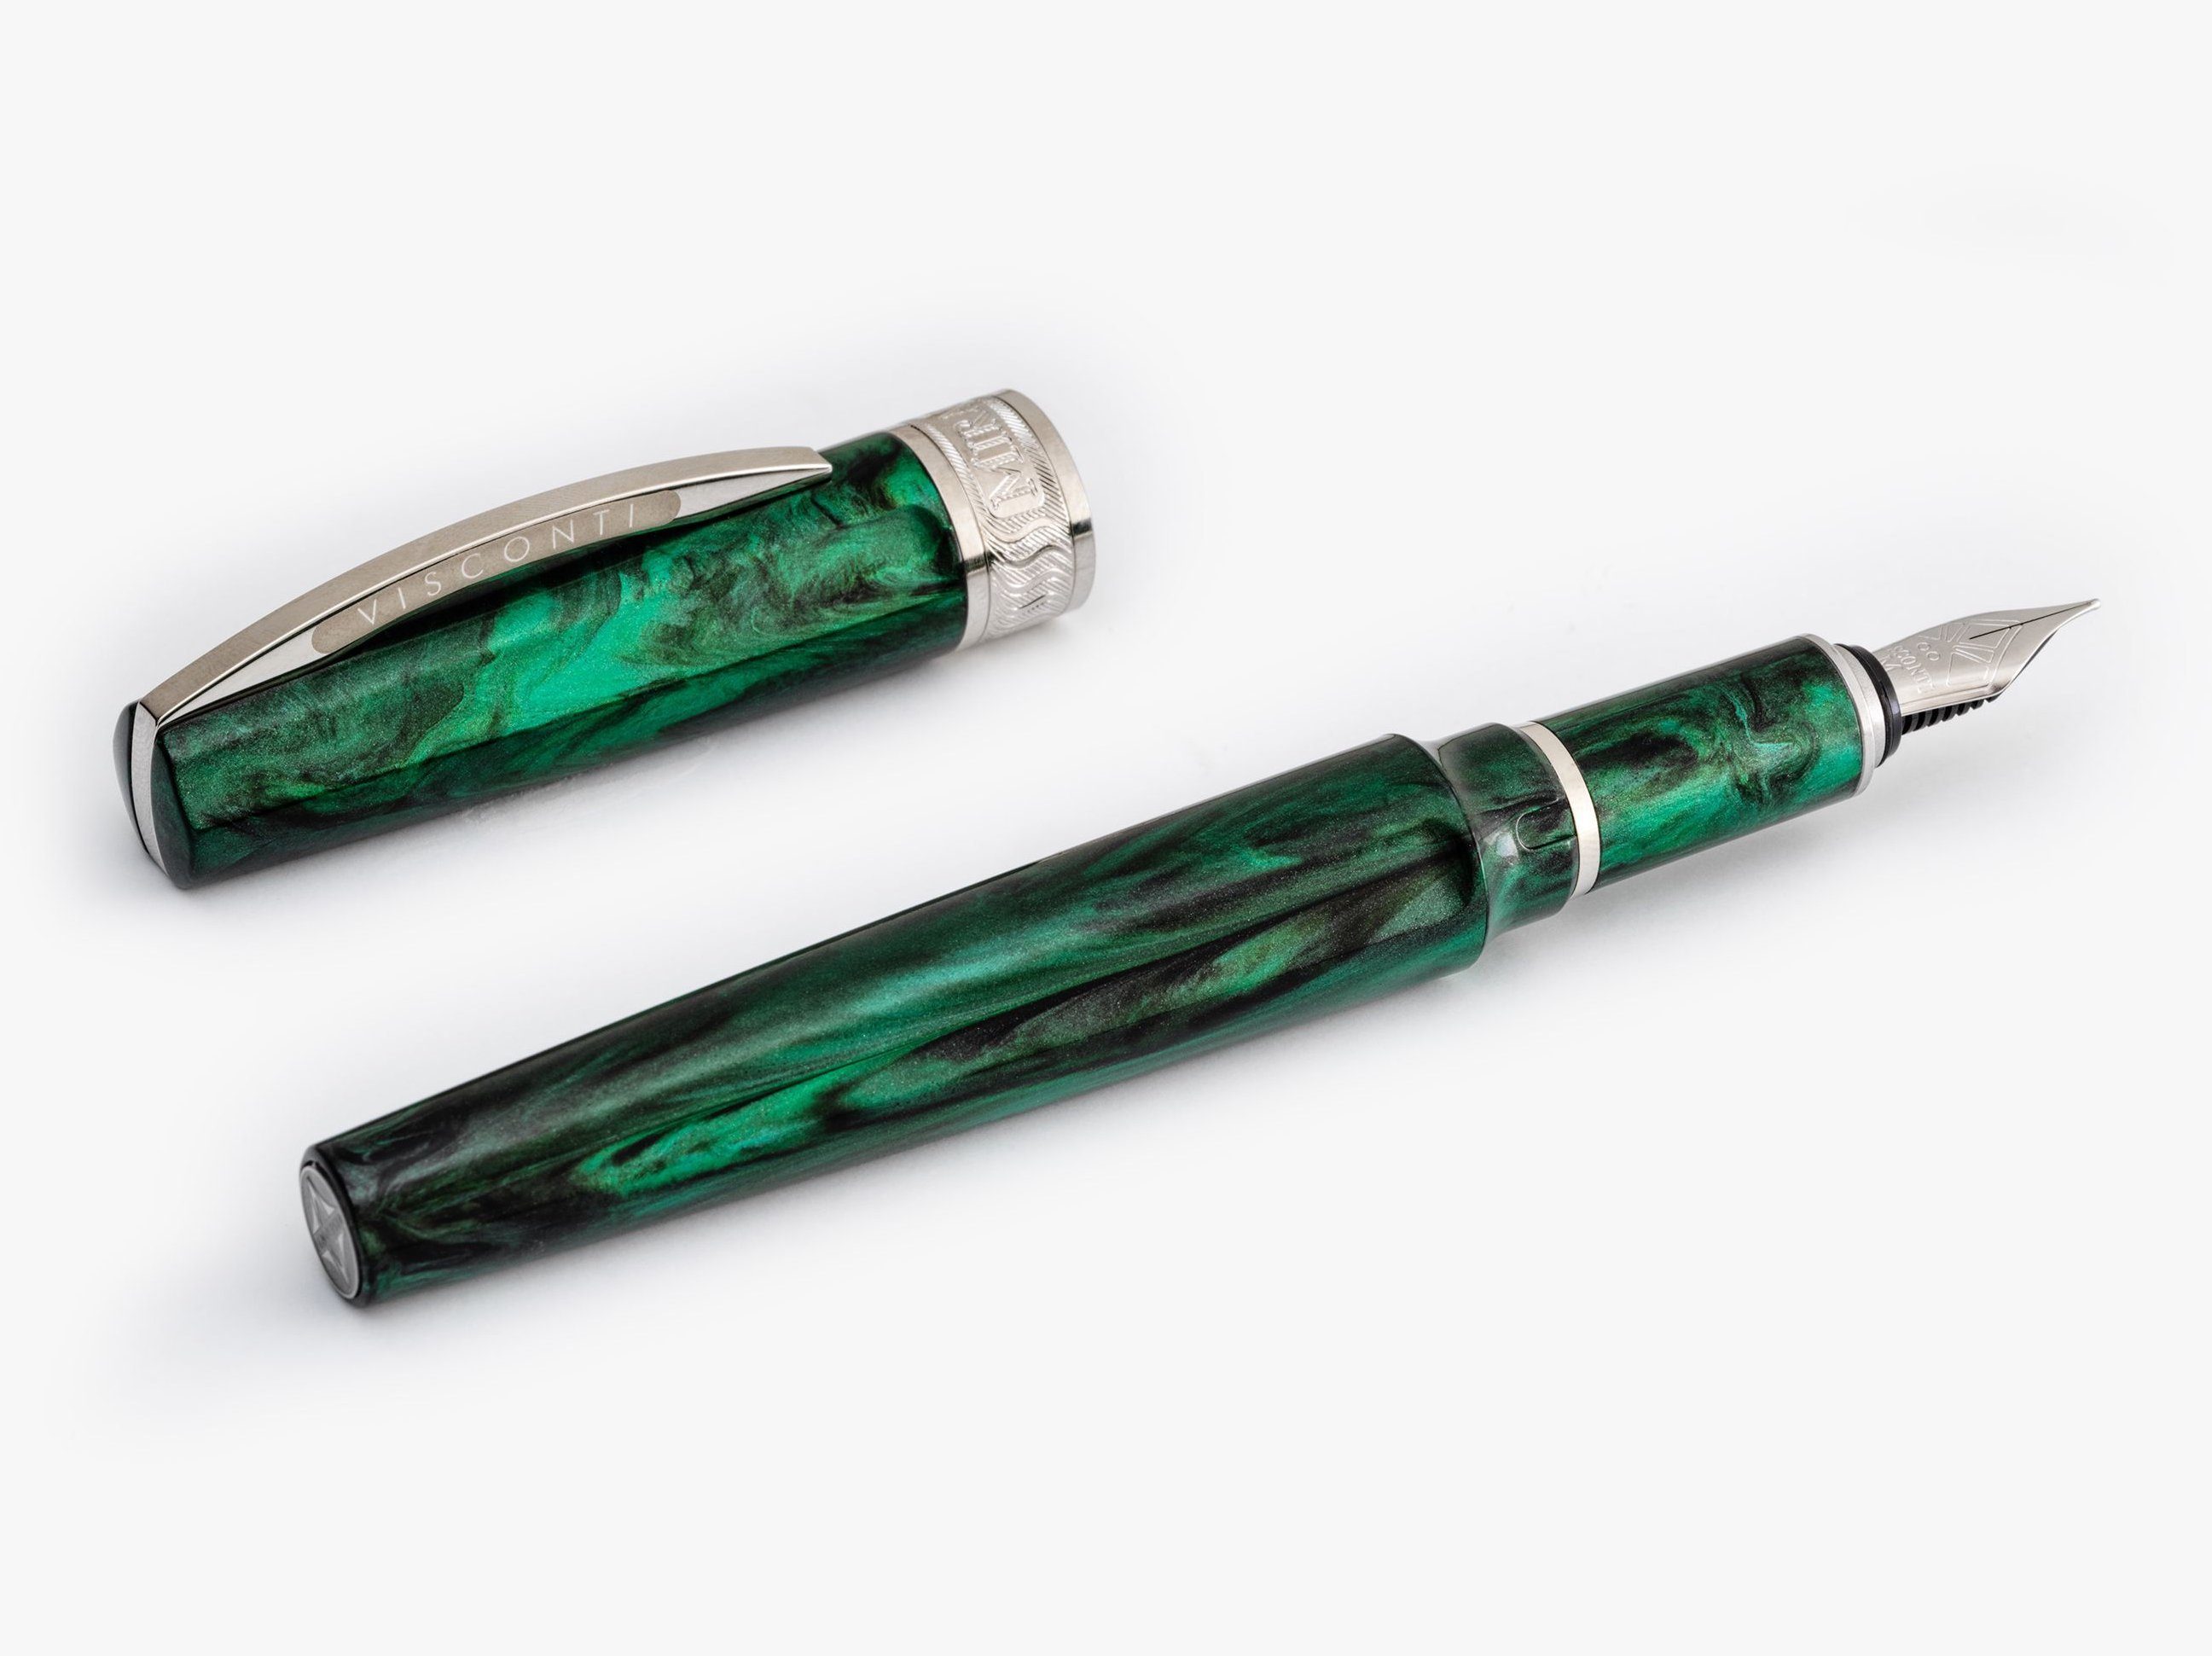 Visconti Füllfederhalter Visconti Mirage Füllfederhalter Emerald Fountain Pen verschiedene, (kein Set)